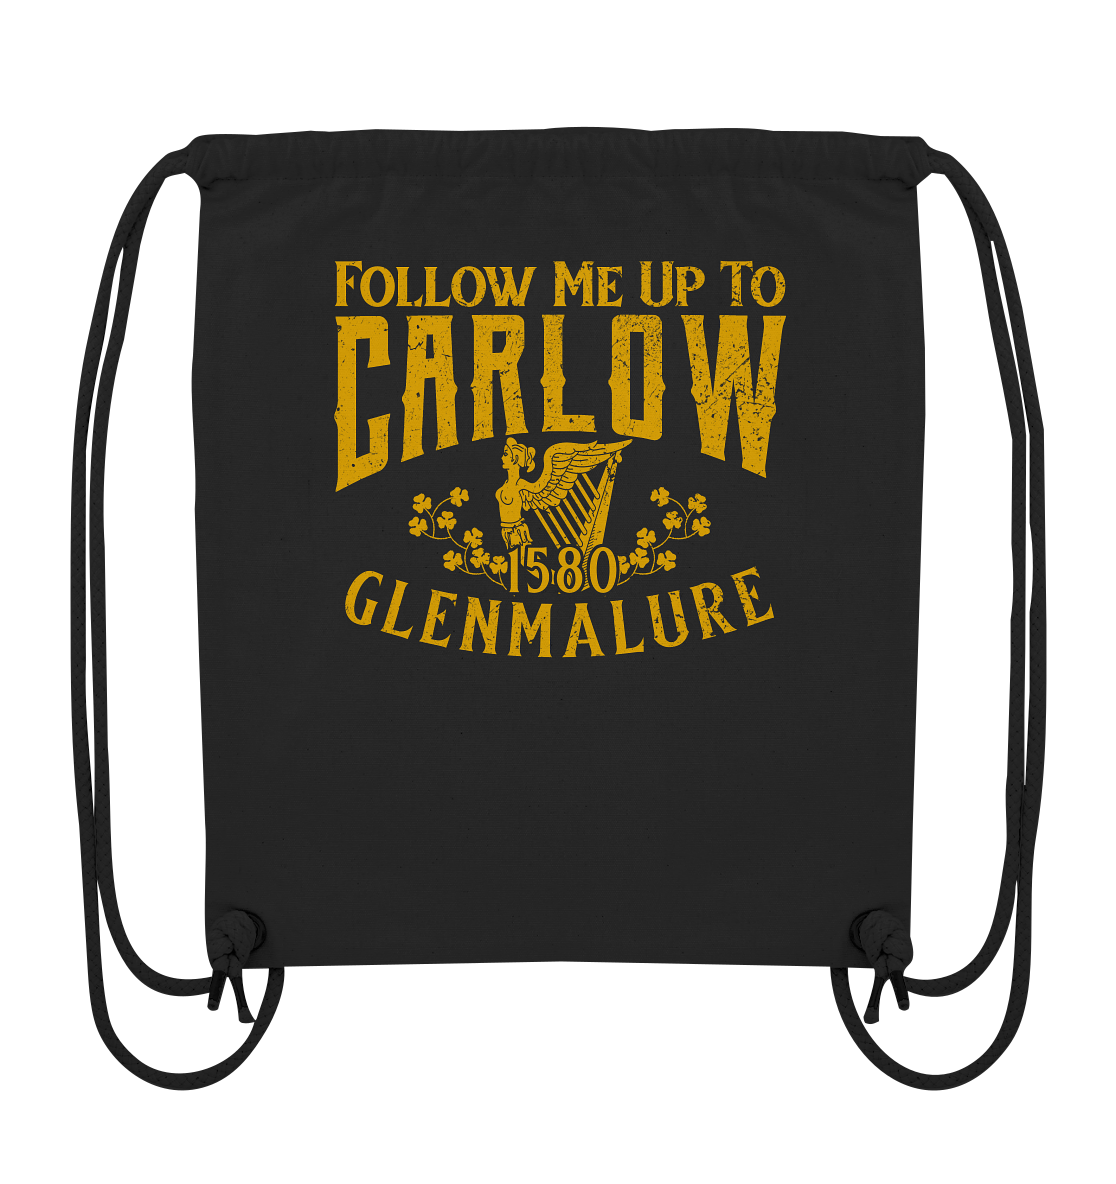 Follow Me Up To Carlow - Organic Gym-Bag